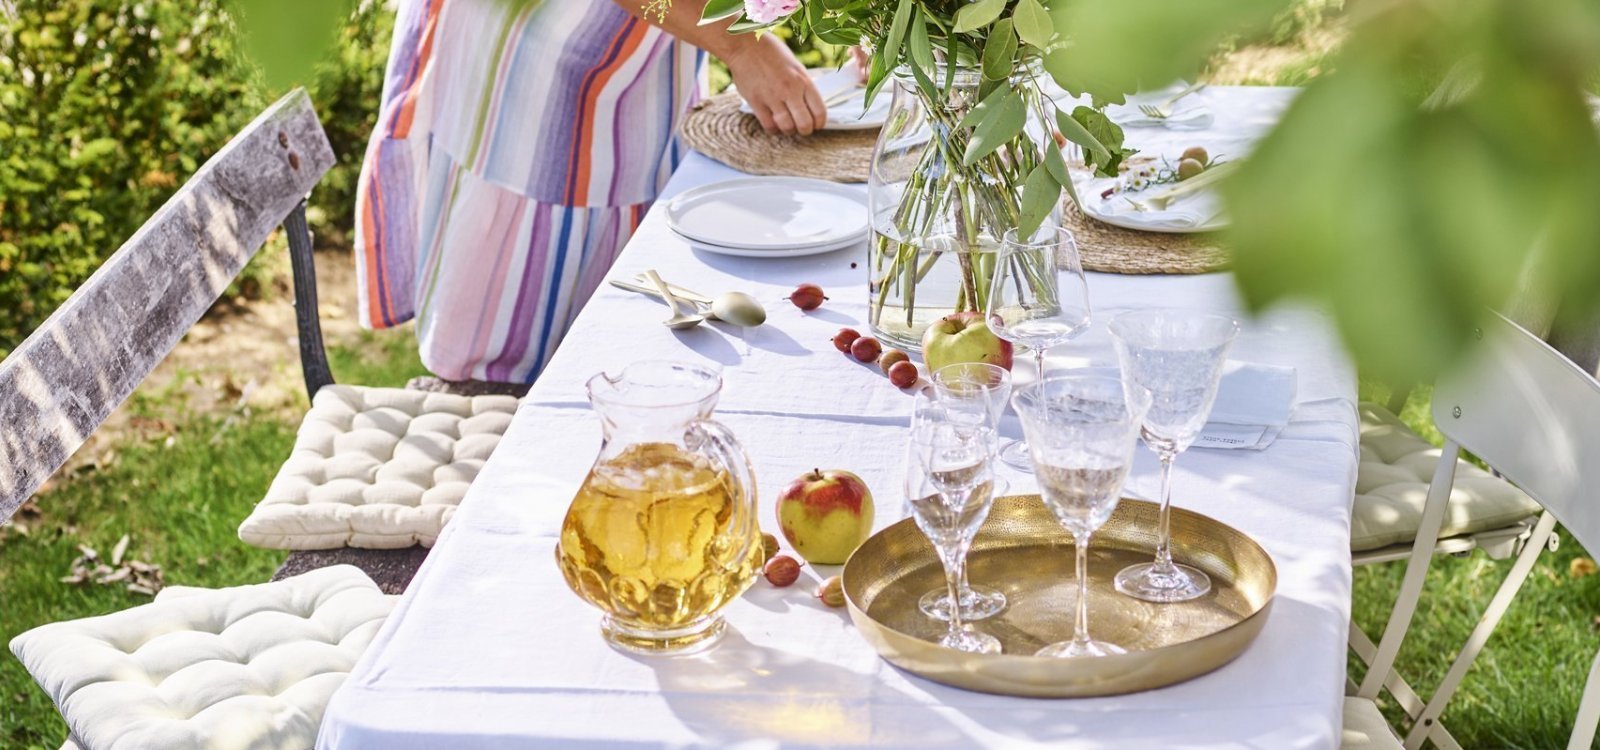 Vrouw met gestreept zomerjurk is de tafel aan klaarzetten voor enkele gasten. Er staat al een kan met vers appelsap op tafel en enkele glazen. De vrouw is de borden aan het plaatsen op de tafel met wit linnen tafelkleed. De tafel staat onder een perenboom in de tuin. 